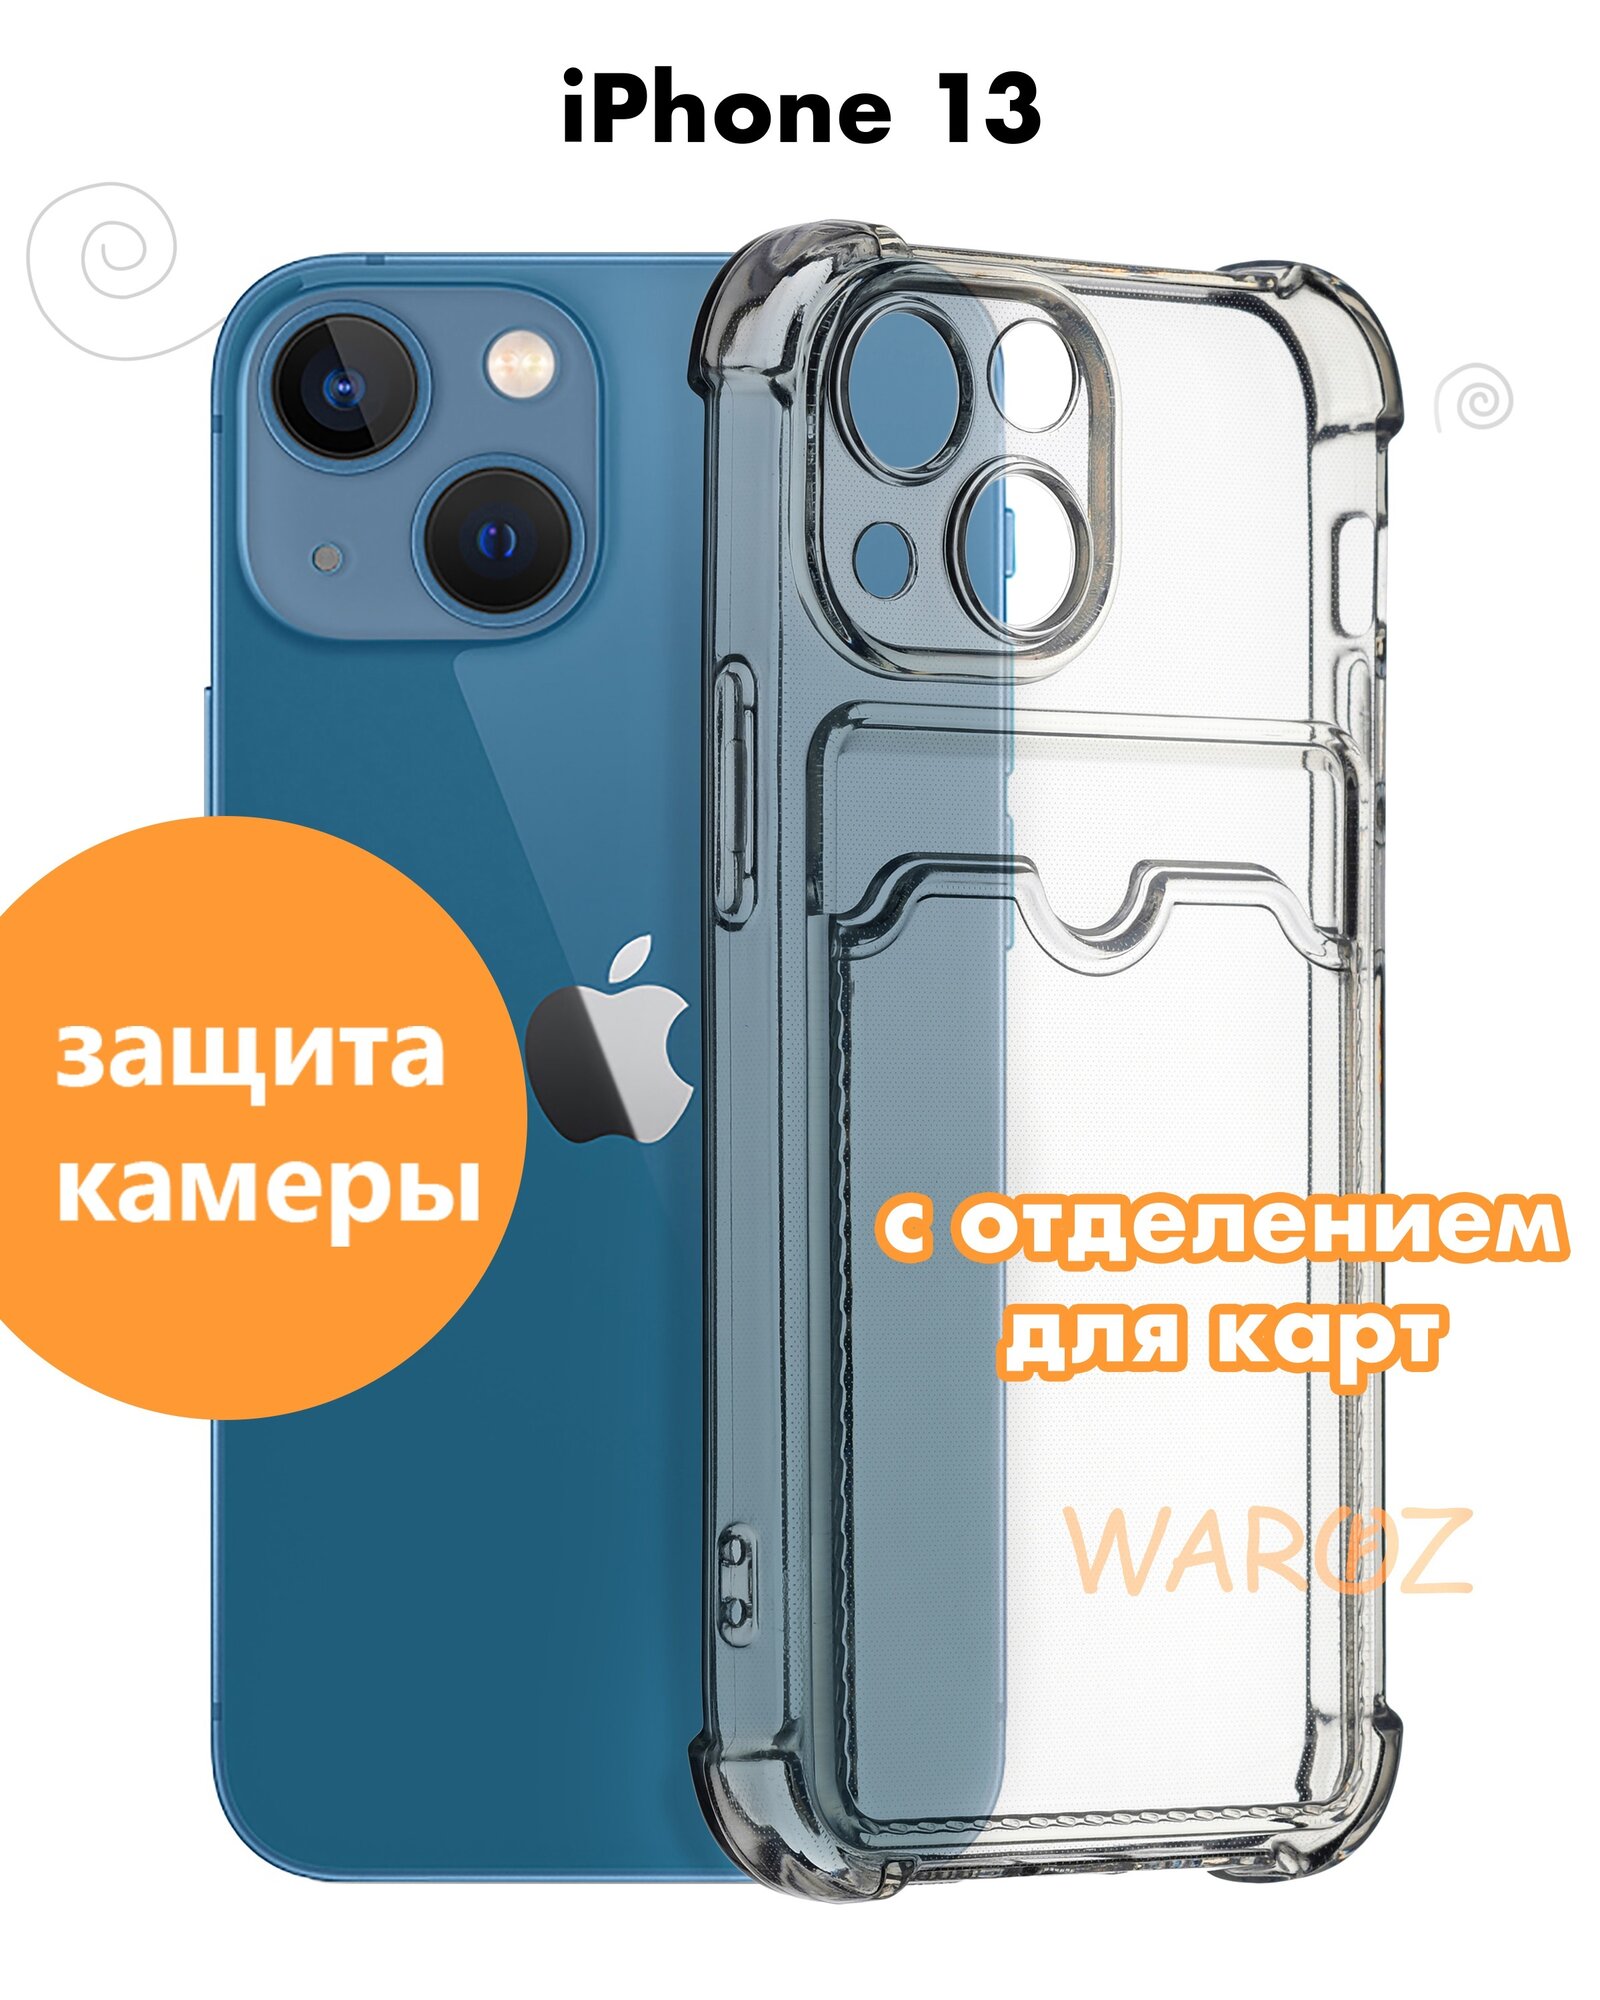 Чехол для смартфона Apple iPhone 13 силиконовый прозрачный противоударный с защитой камеры, бампер с усиленными углами для телефона Айфон 13 с отделением для карт, бесцветный